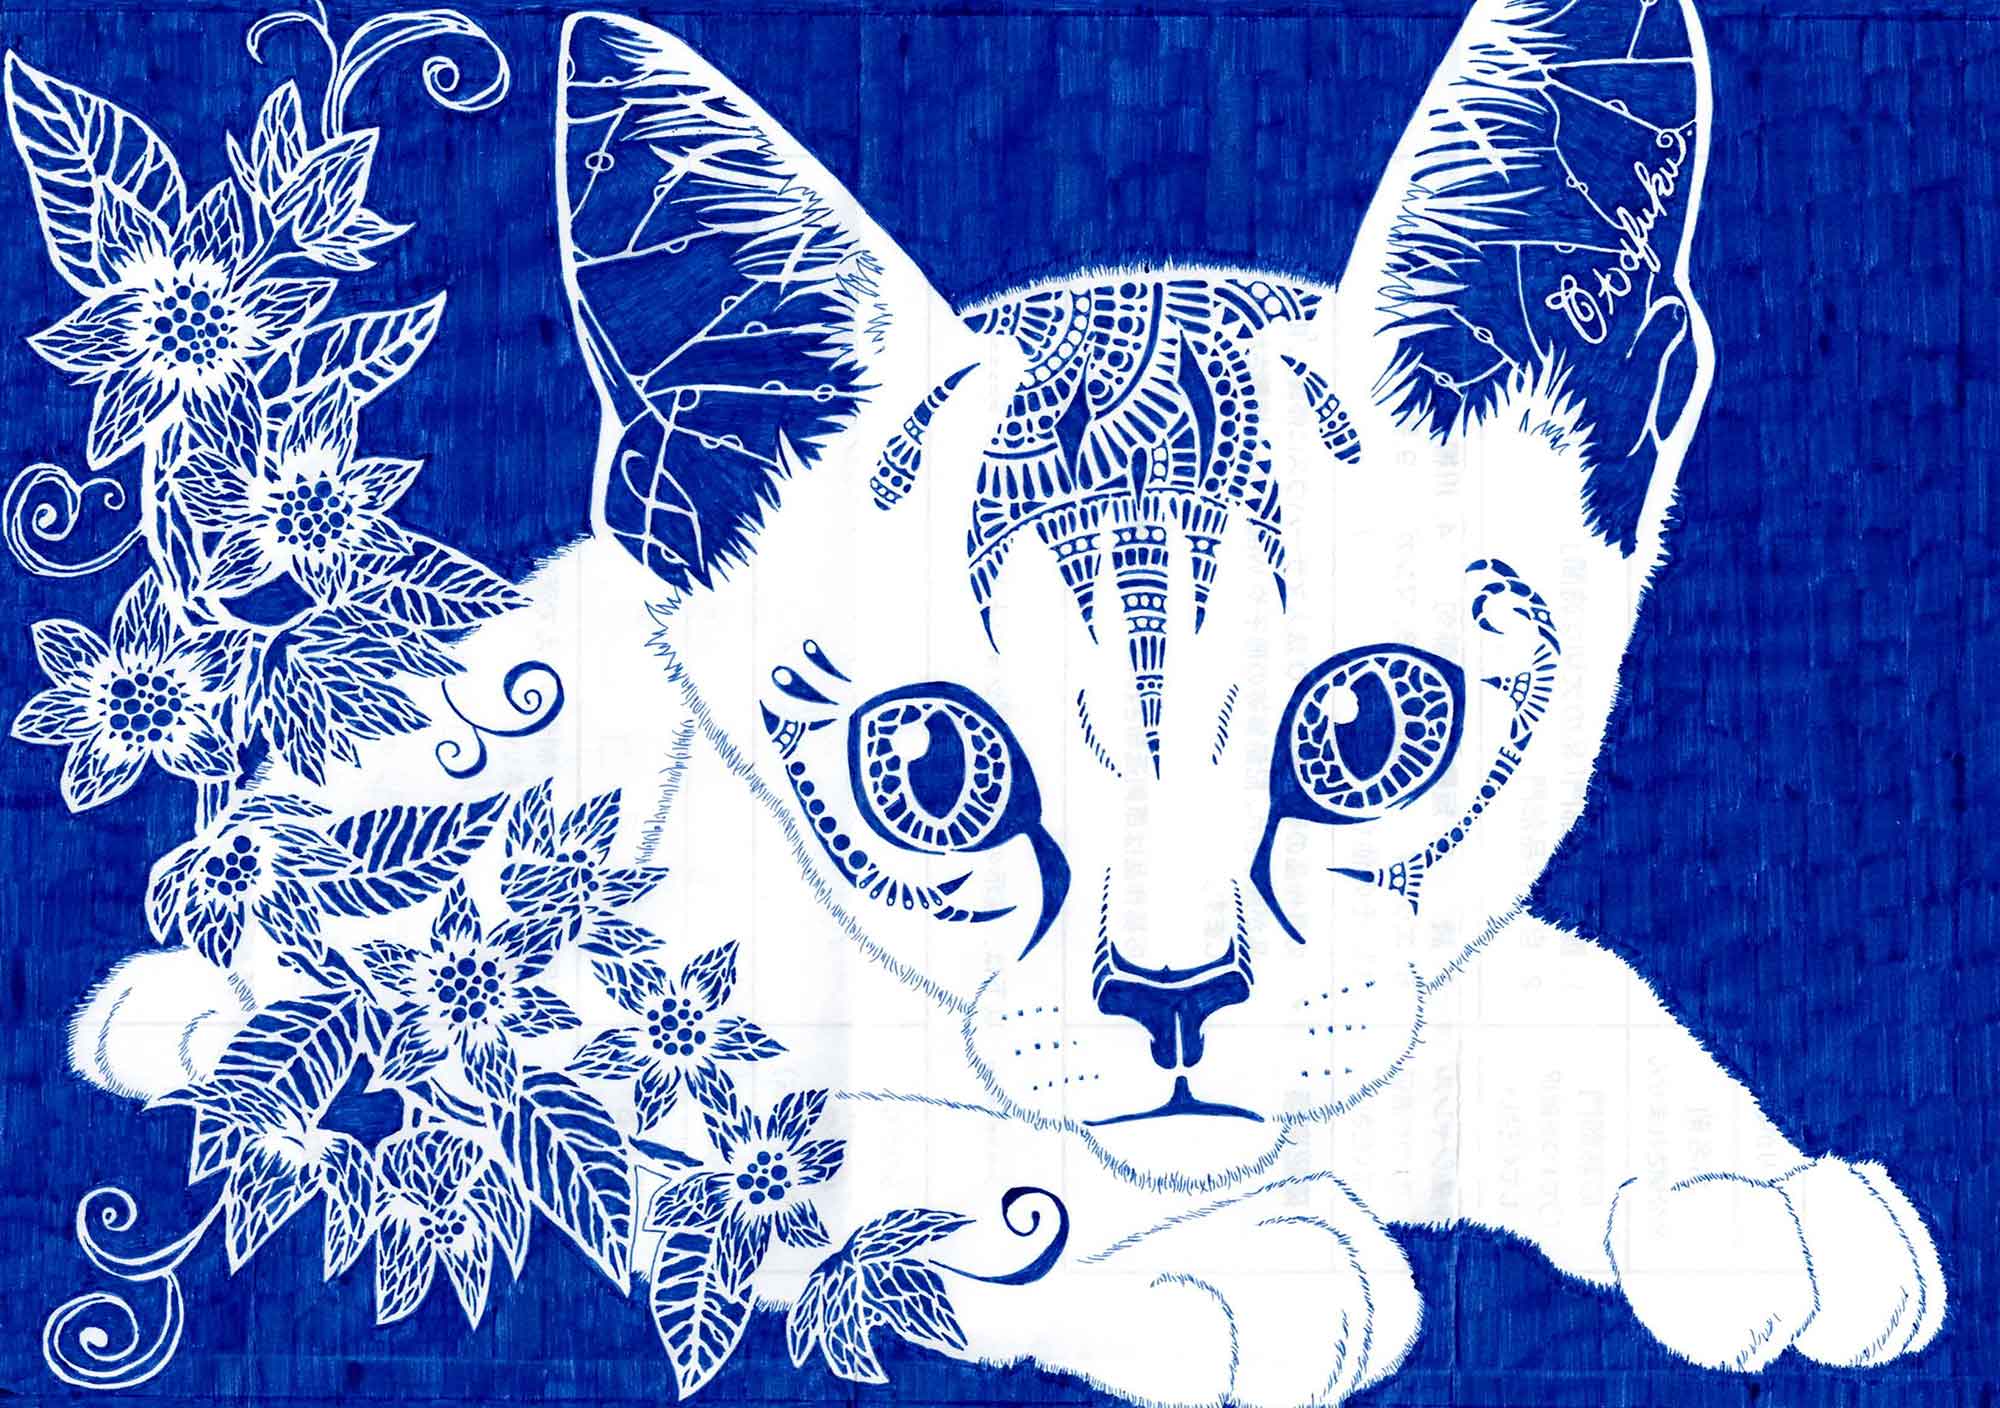 青いペン1色で描かれた作品です。横長の画面には、真っ青な背景に白い猫と花が描かれています。白い猫は腹ばいになっていて、くりくりとした目で真っすぐに前を見ています。猫の左側にはつる植物があり、6枚の花弁をもつ花がいくつも咲いています。